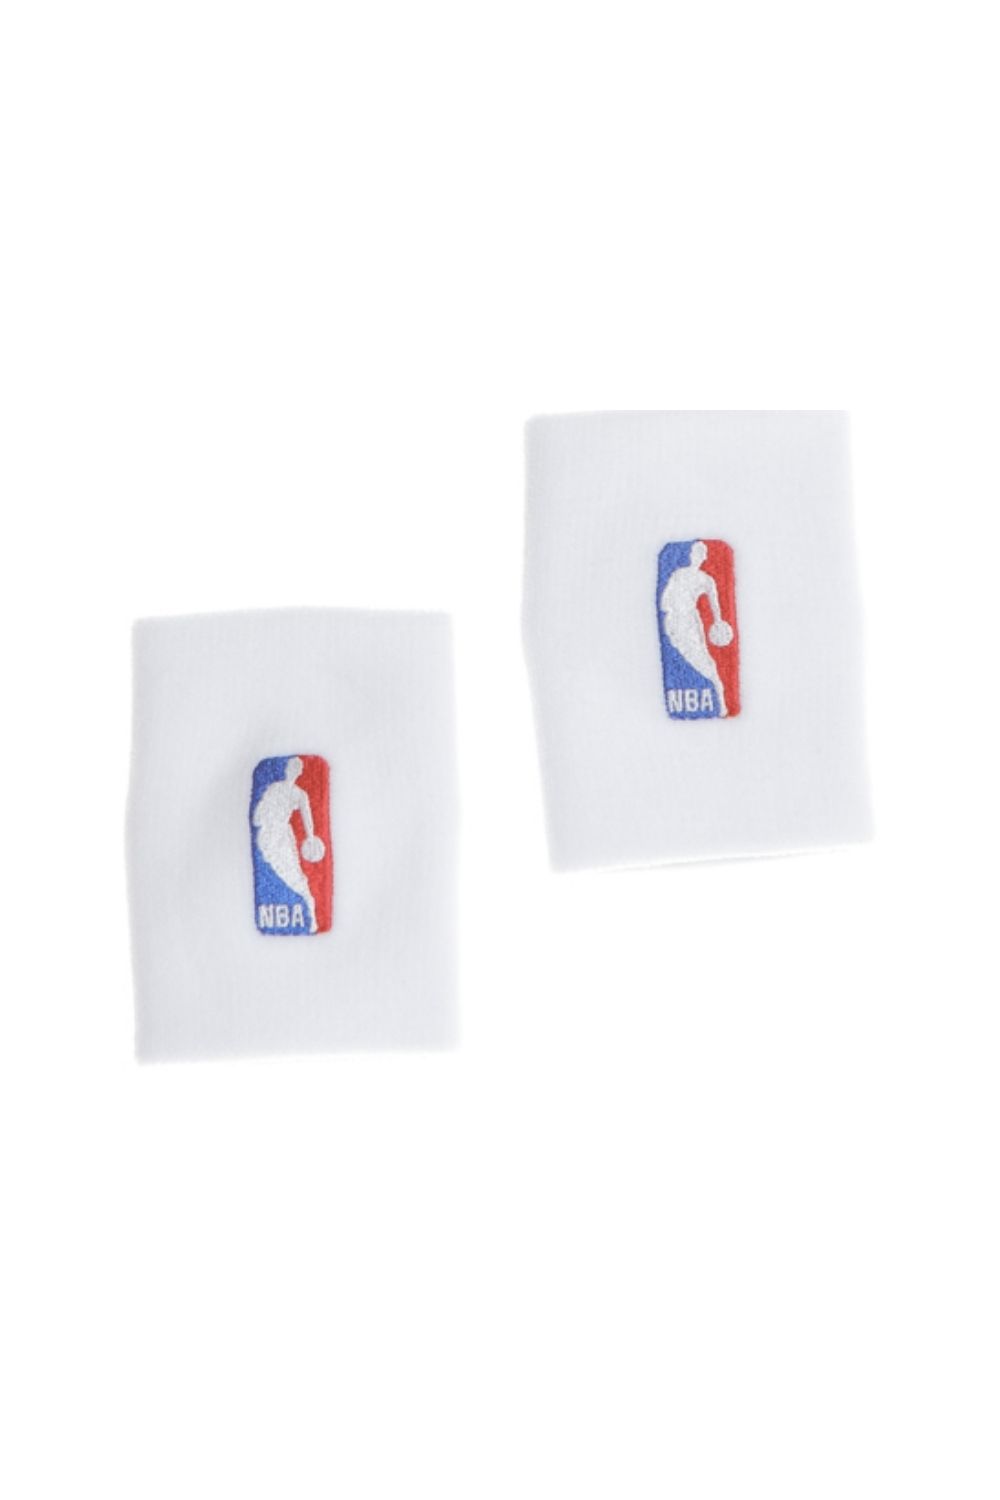 NIKE - Περικάρπια NIKE WRISTBANDS NBA λευκά Ανδρικά/Αξεσουάρ/Αθλητικά Είδη/Εξοπλισμός